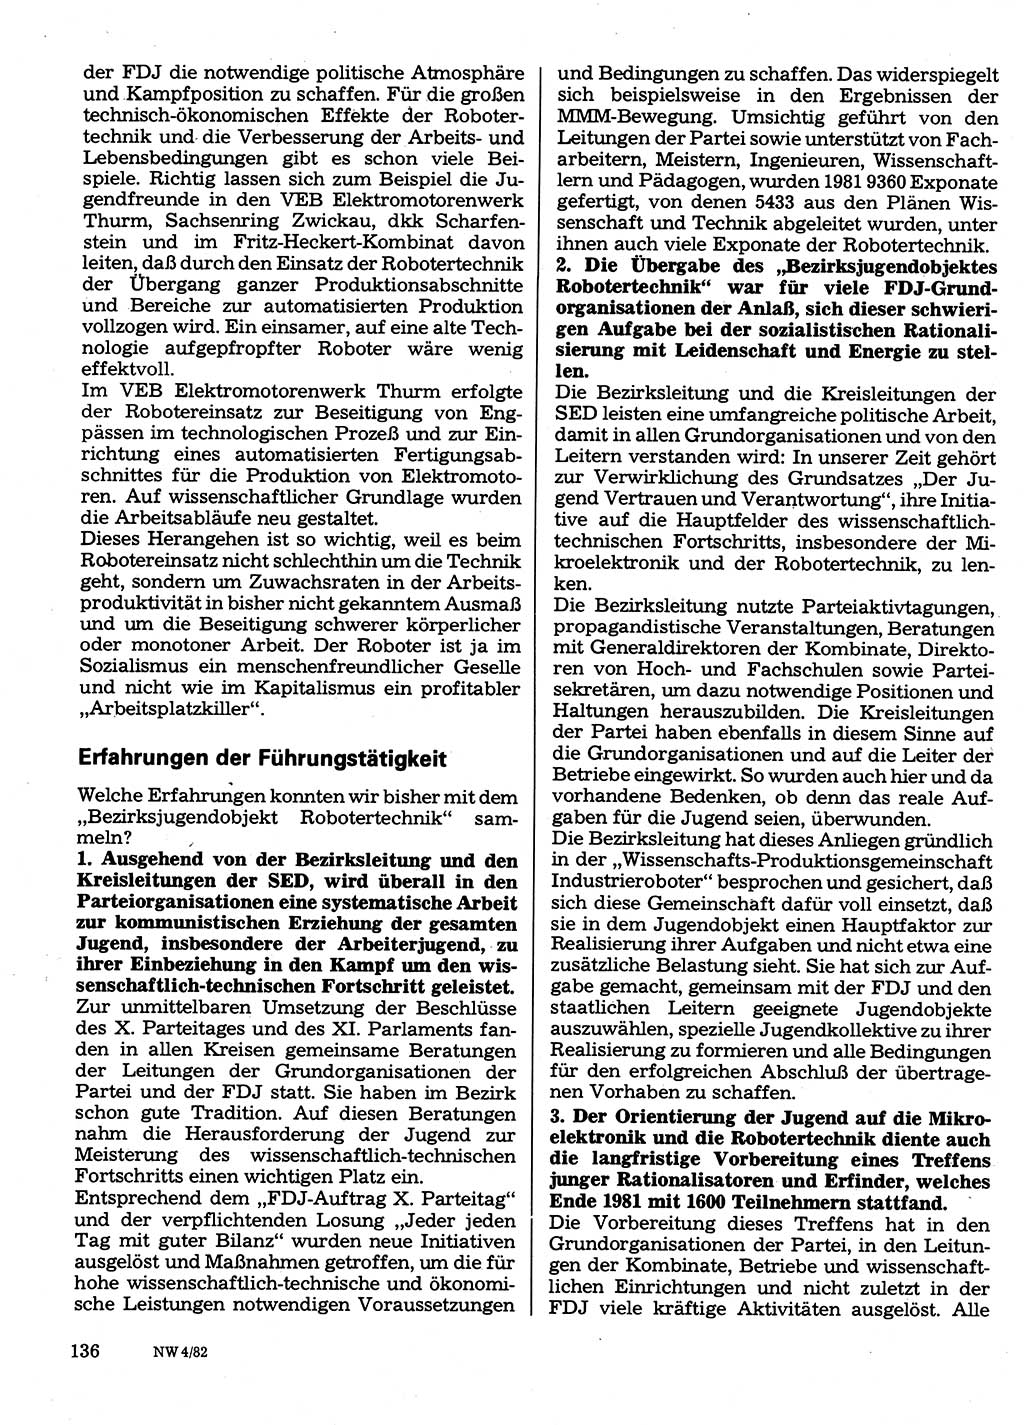 Neuer Weg (NW), Organ des Zentralkomitees (ZK) der SED (Sozialistische Einheitspartei Deutschlands) für Fragen des Parteilebens, 37. Jahrgang [Deutsche Demokratische Republik (DDR)] 1982, Seite 136 (NW ZK SED DDR 1982, S. 136)